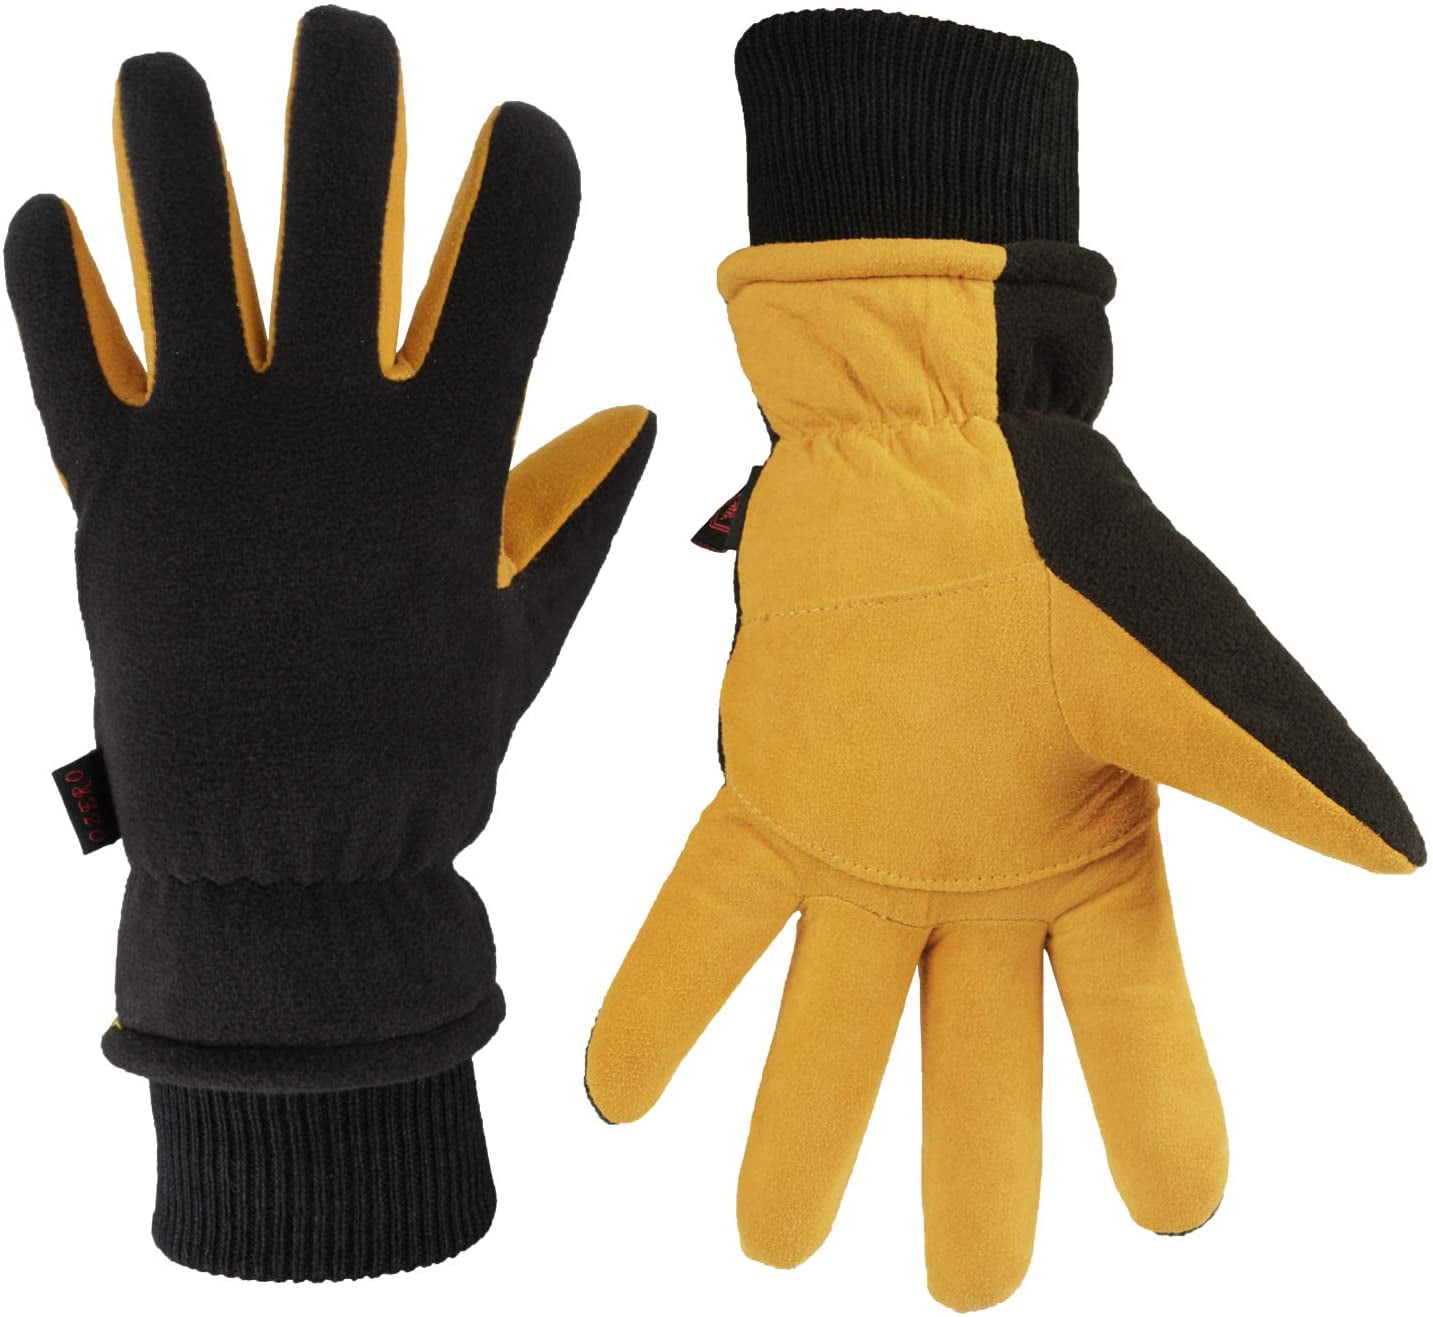 Thermal Heat Insulated-Deer Skin Suede Leather Heatlok Gloves-Black-GRAY-Medium 